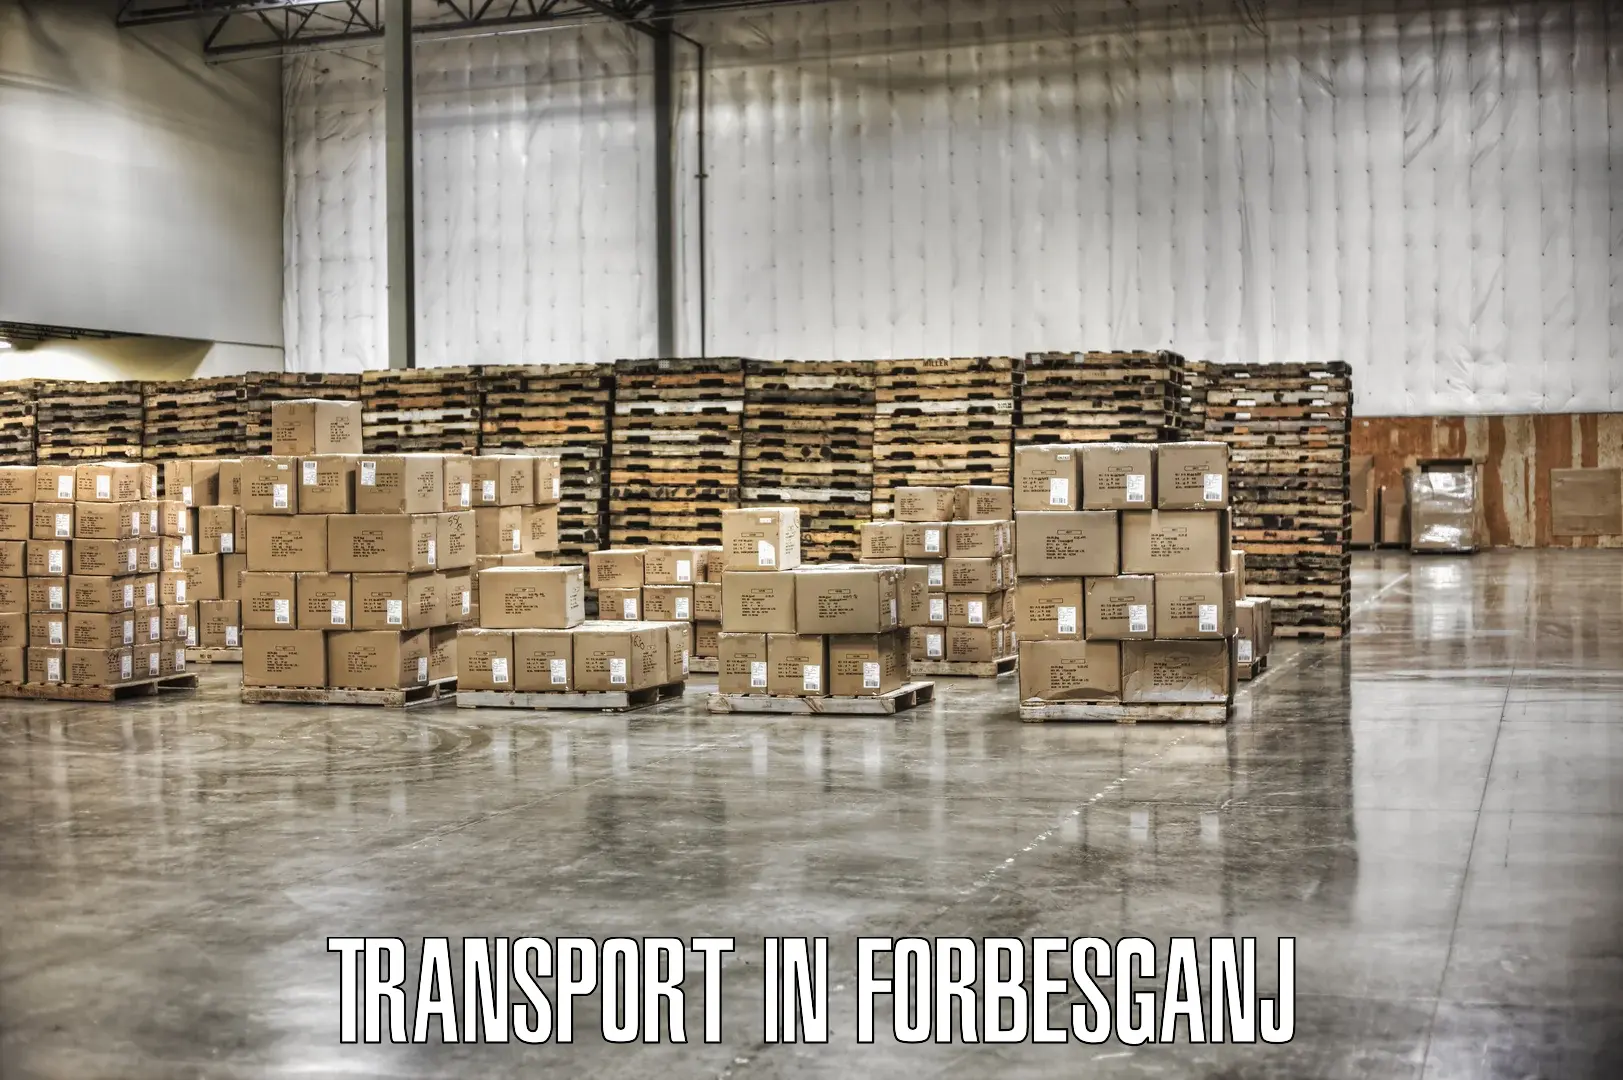 Online transport service in Forbesganj